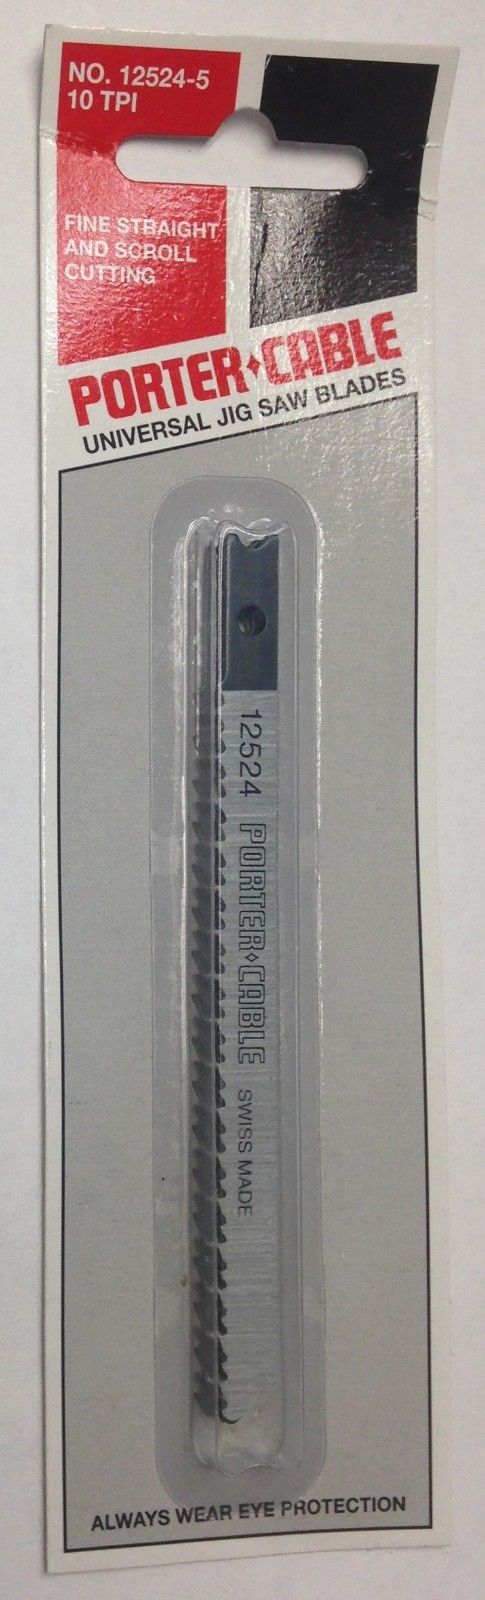 Porter Cable 12524-5 Fine Straight & Scroll Cutting Jig Saw Blades U-Shank 10TPI